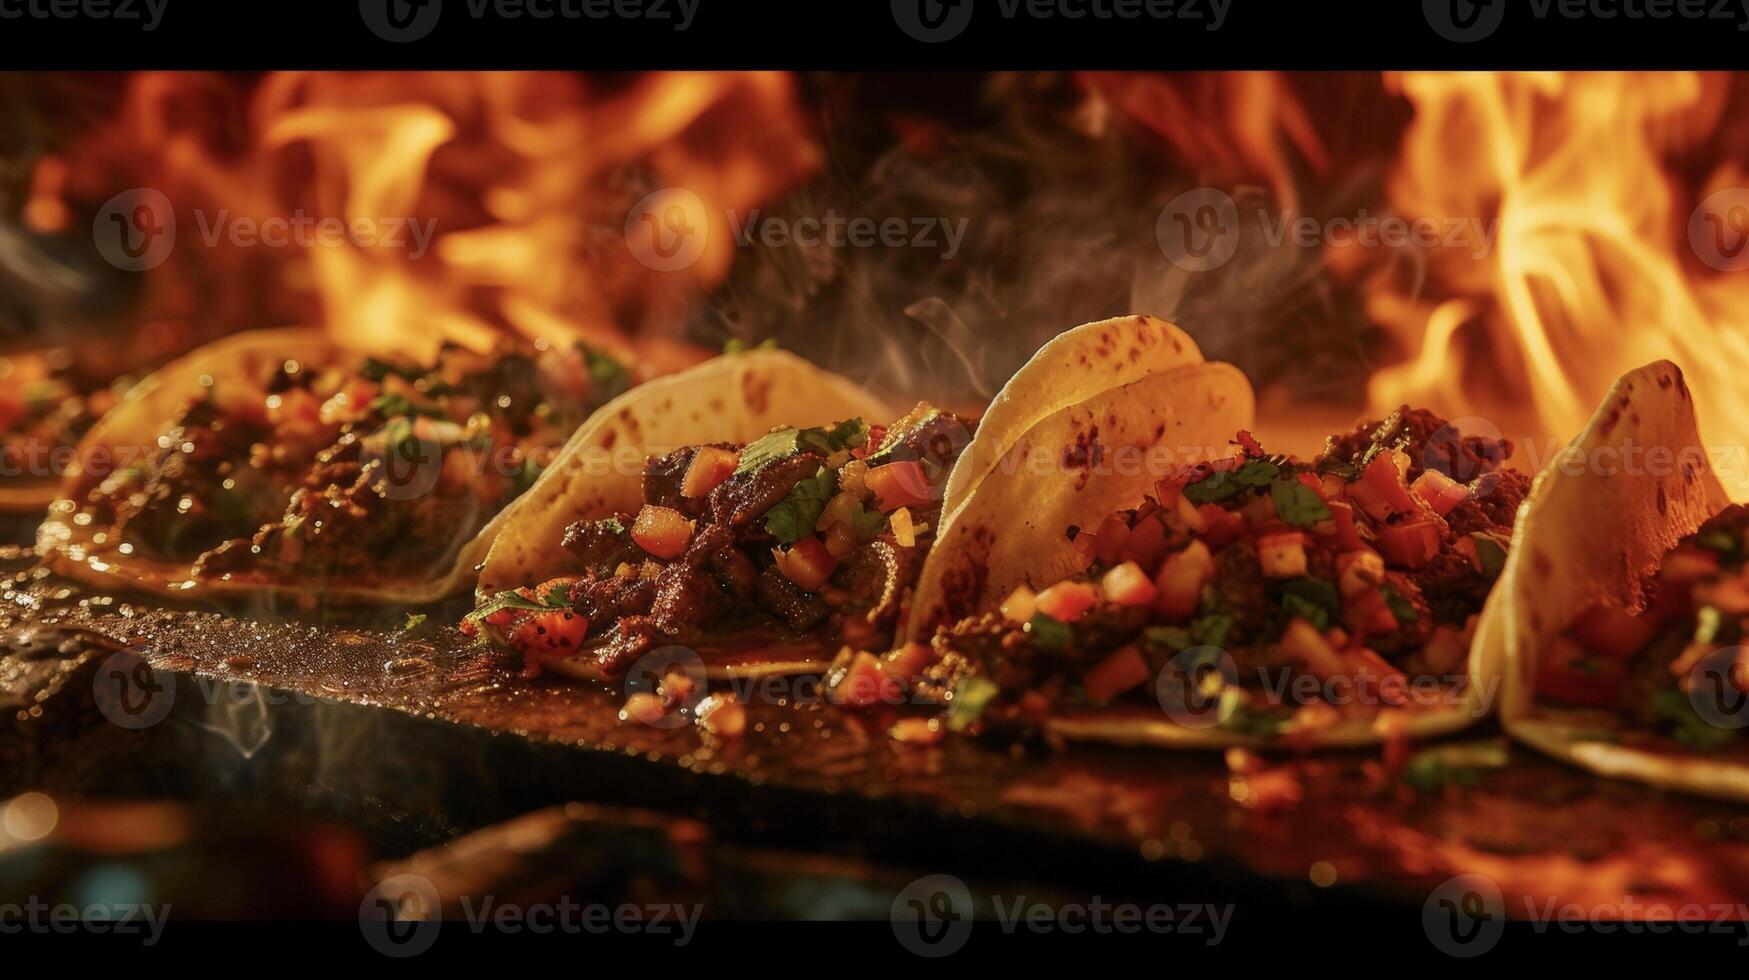 een zintuiglijk overbelasten wacht met deze beeld net zo sissend rundvlees taco's dans Aan een bakplaat vrijgeven verleidelijk geuren en hun krokant randen verbeterd door de flikkeren vlammen ik foto